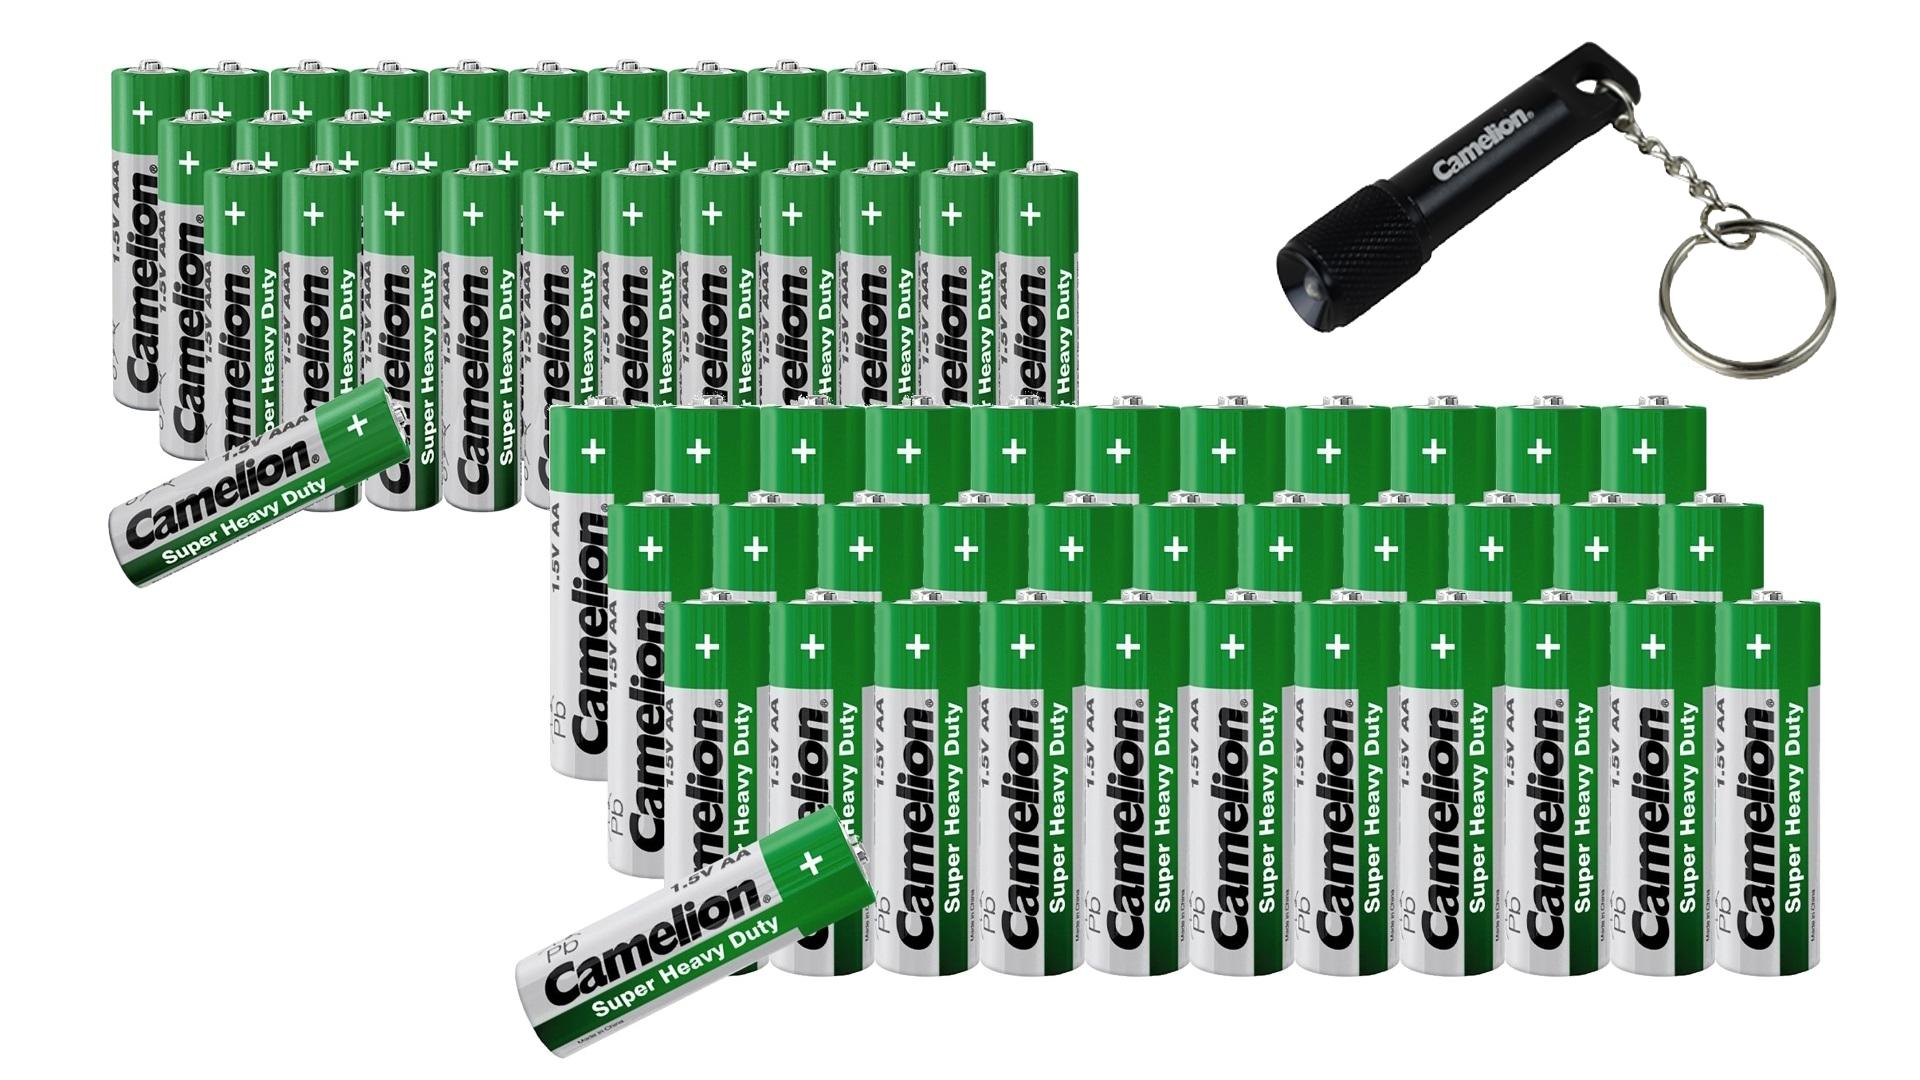 Camelion Zink-Kohle-Batterie Sparset 69-teilig + GRATIS Schlüsselleuchte